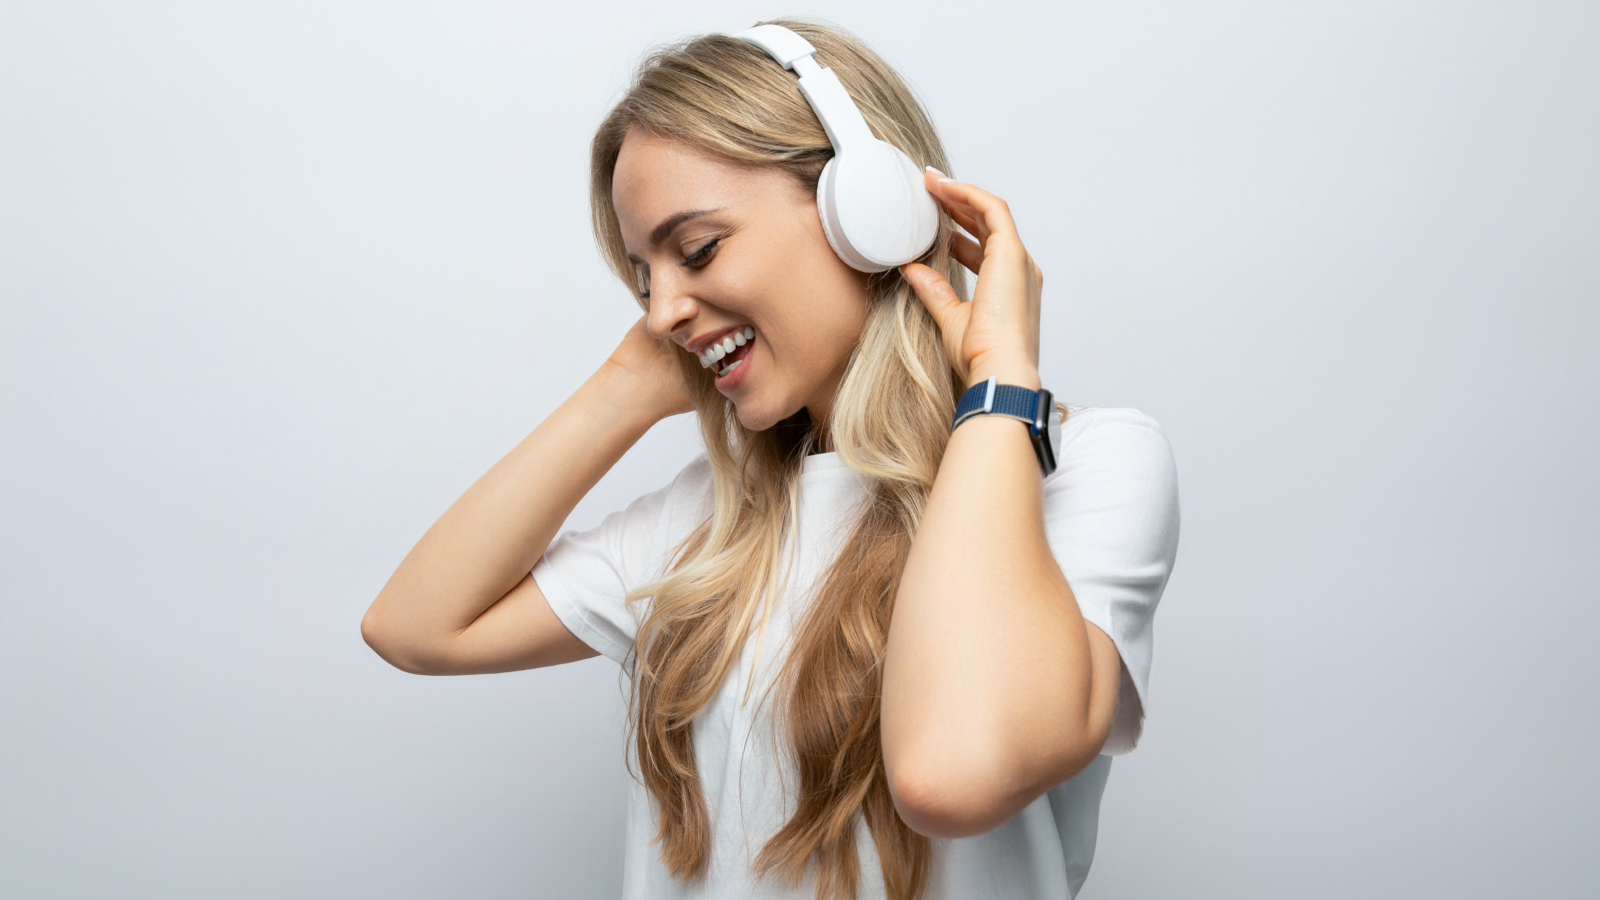 إلى ماذا يؤدي فرط استخدام سماعات الأذن؟